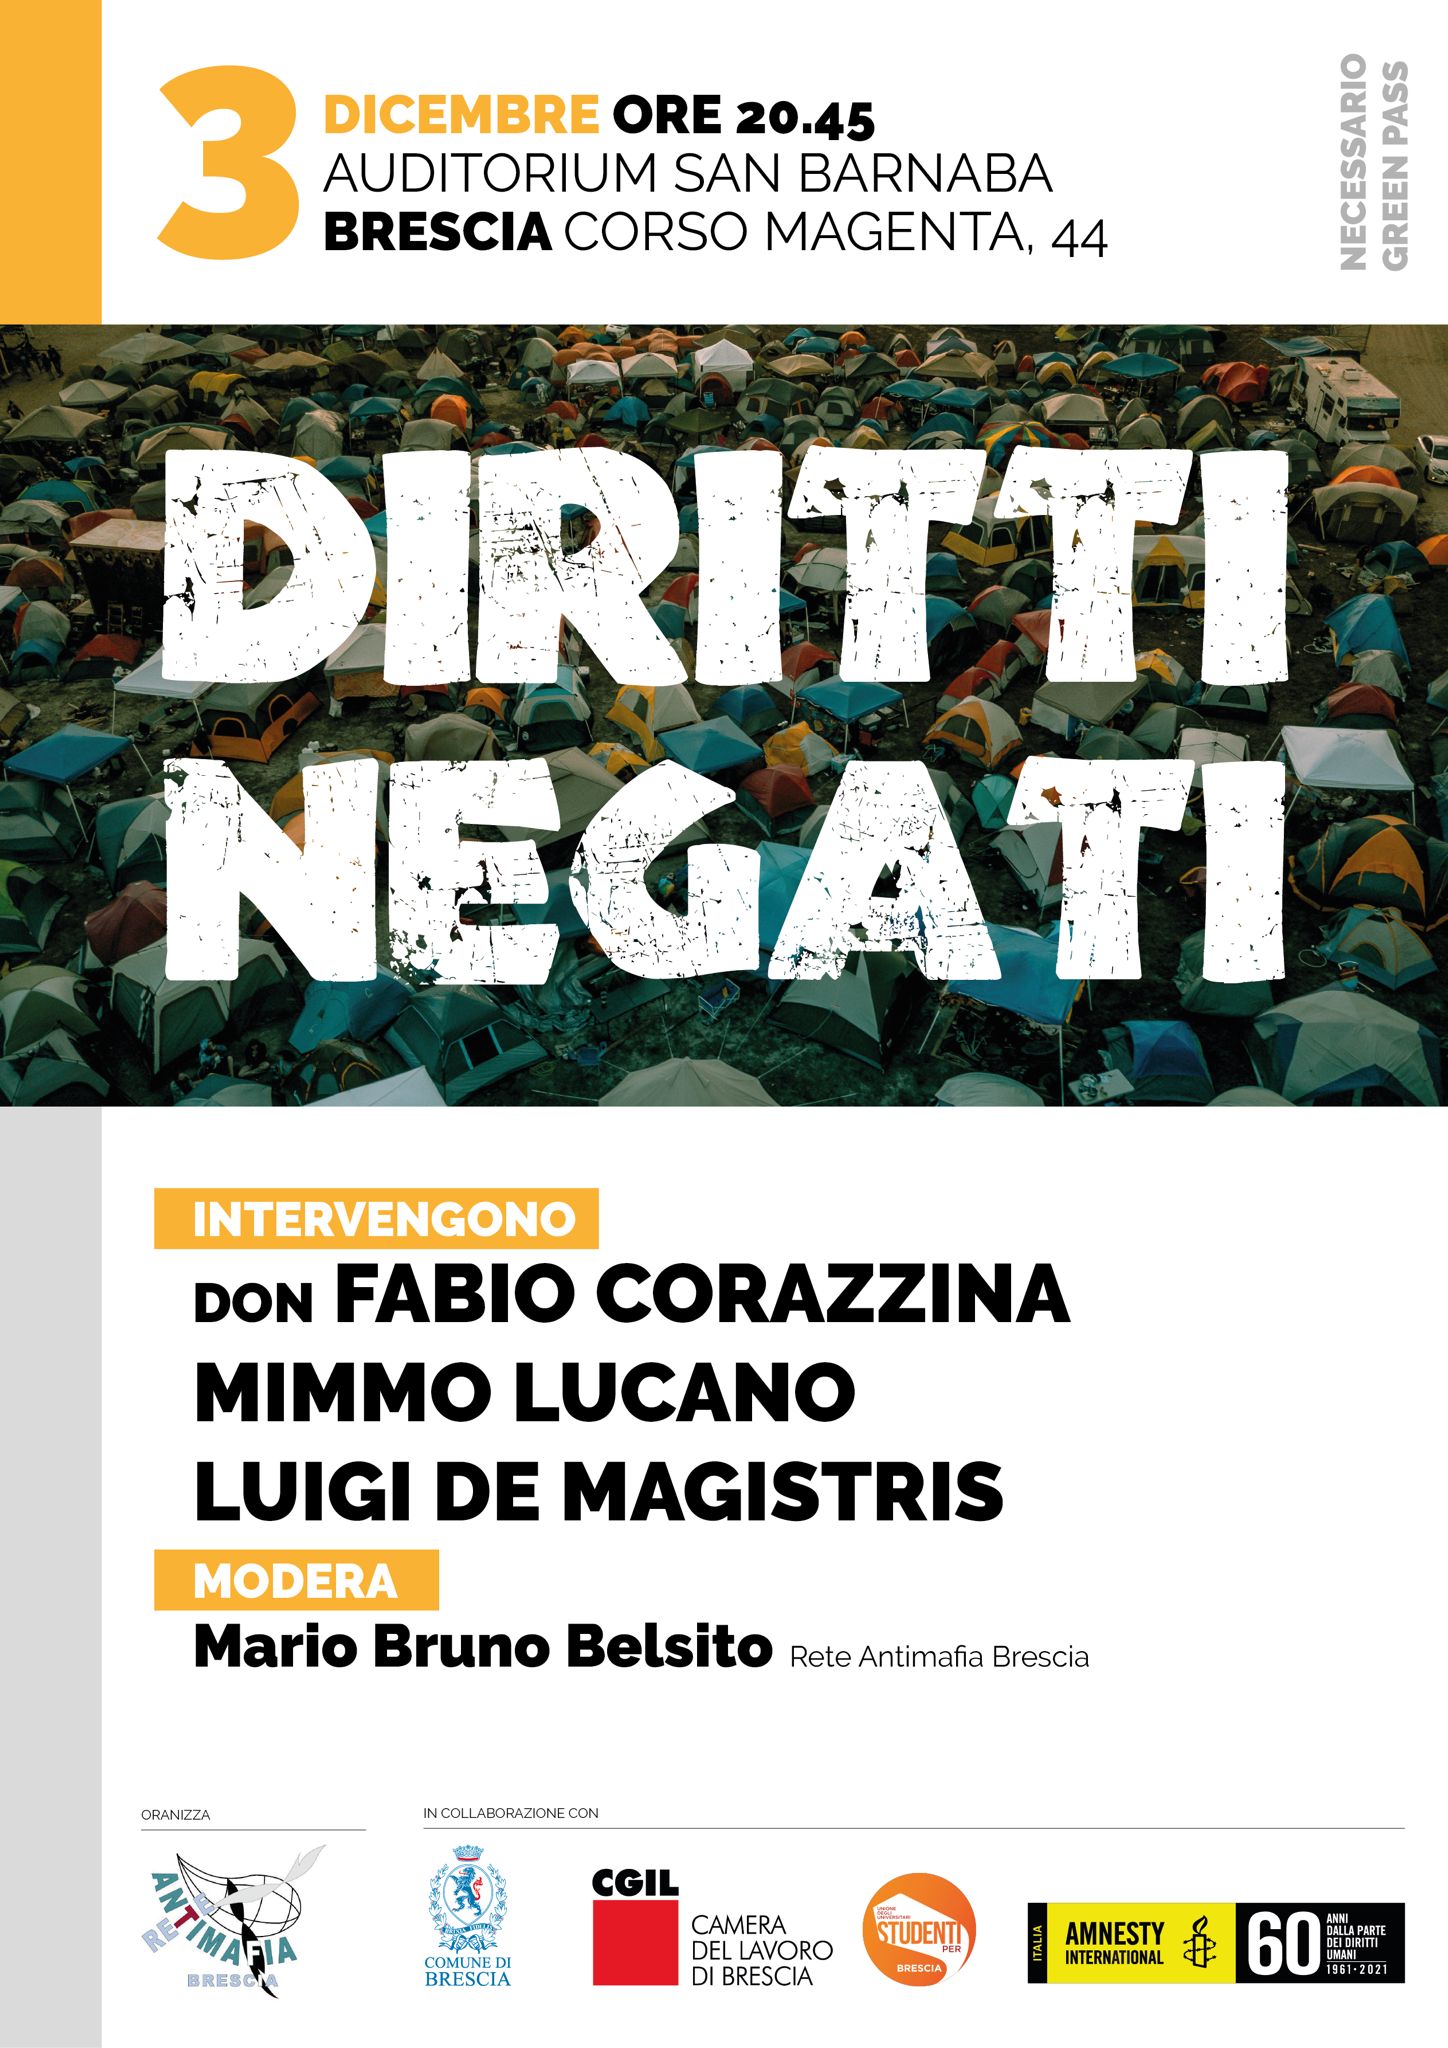 Incontro a Brescia sul tema dei diritti negati con Luigi De Magistris e Mimmo Lucano